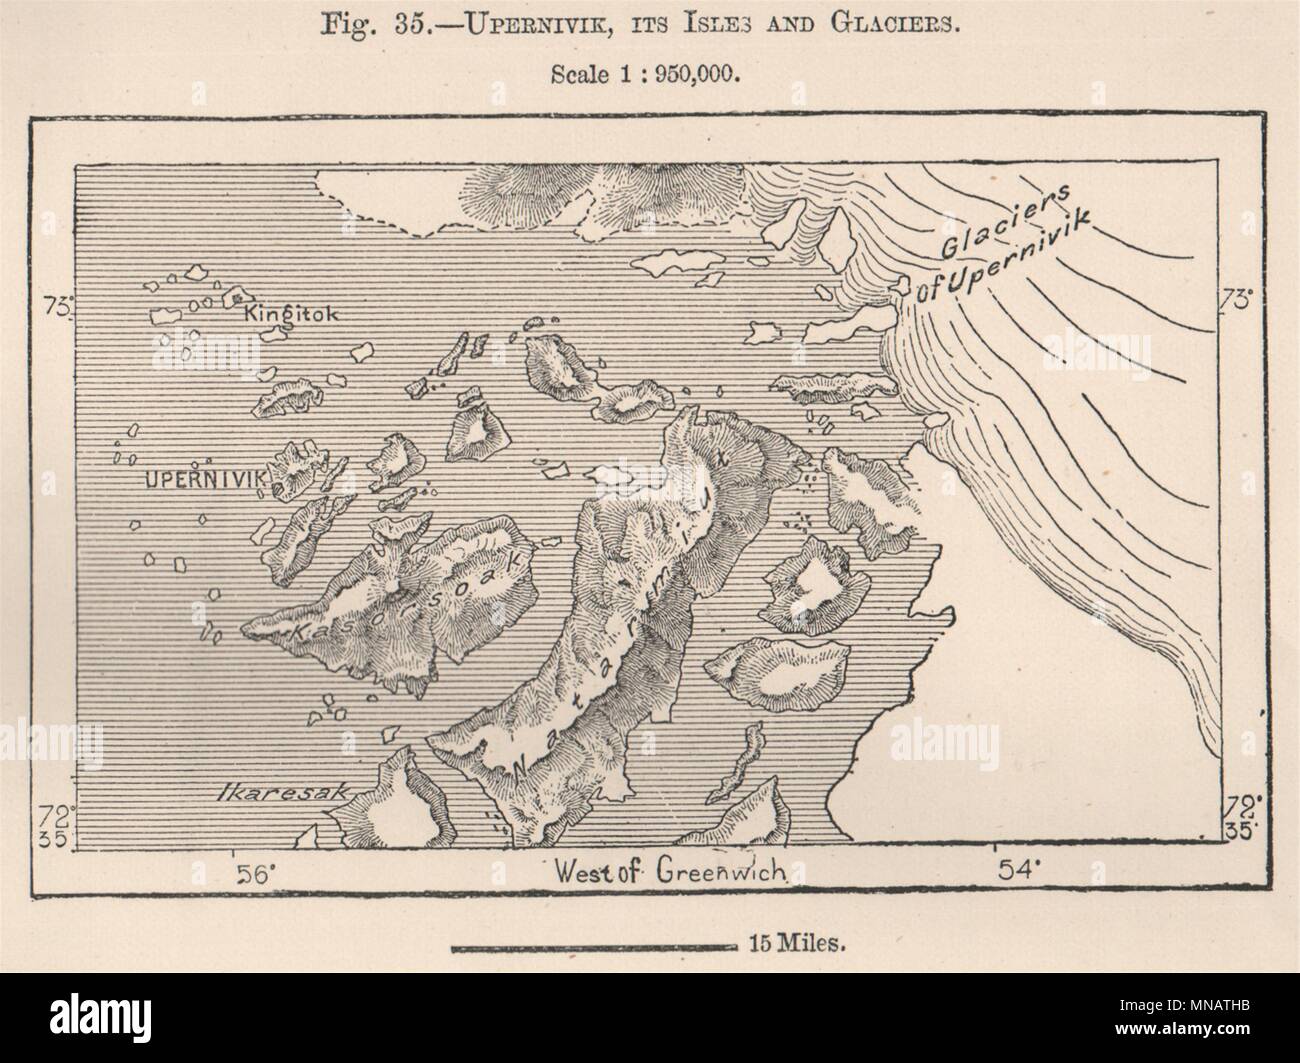 Upernavik, seine Inseln und Gletscher. Grönland 1885 alte antike Karte plan plan Stockfoto